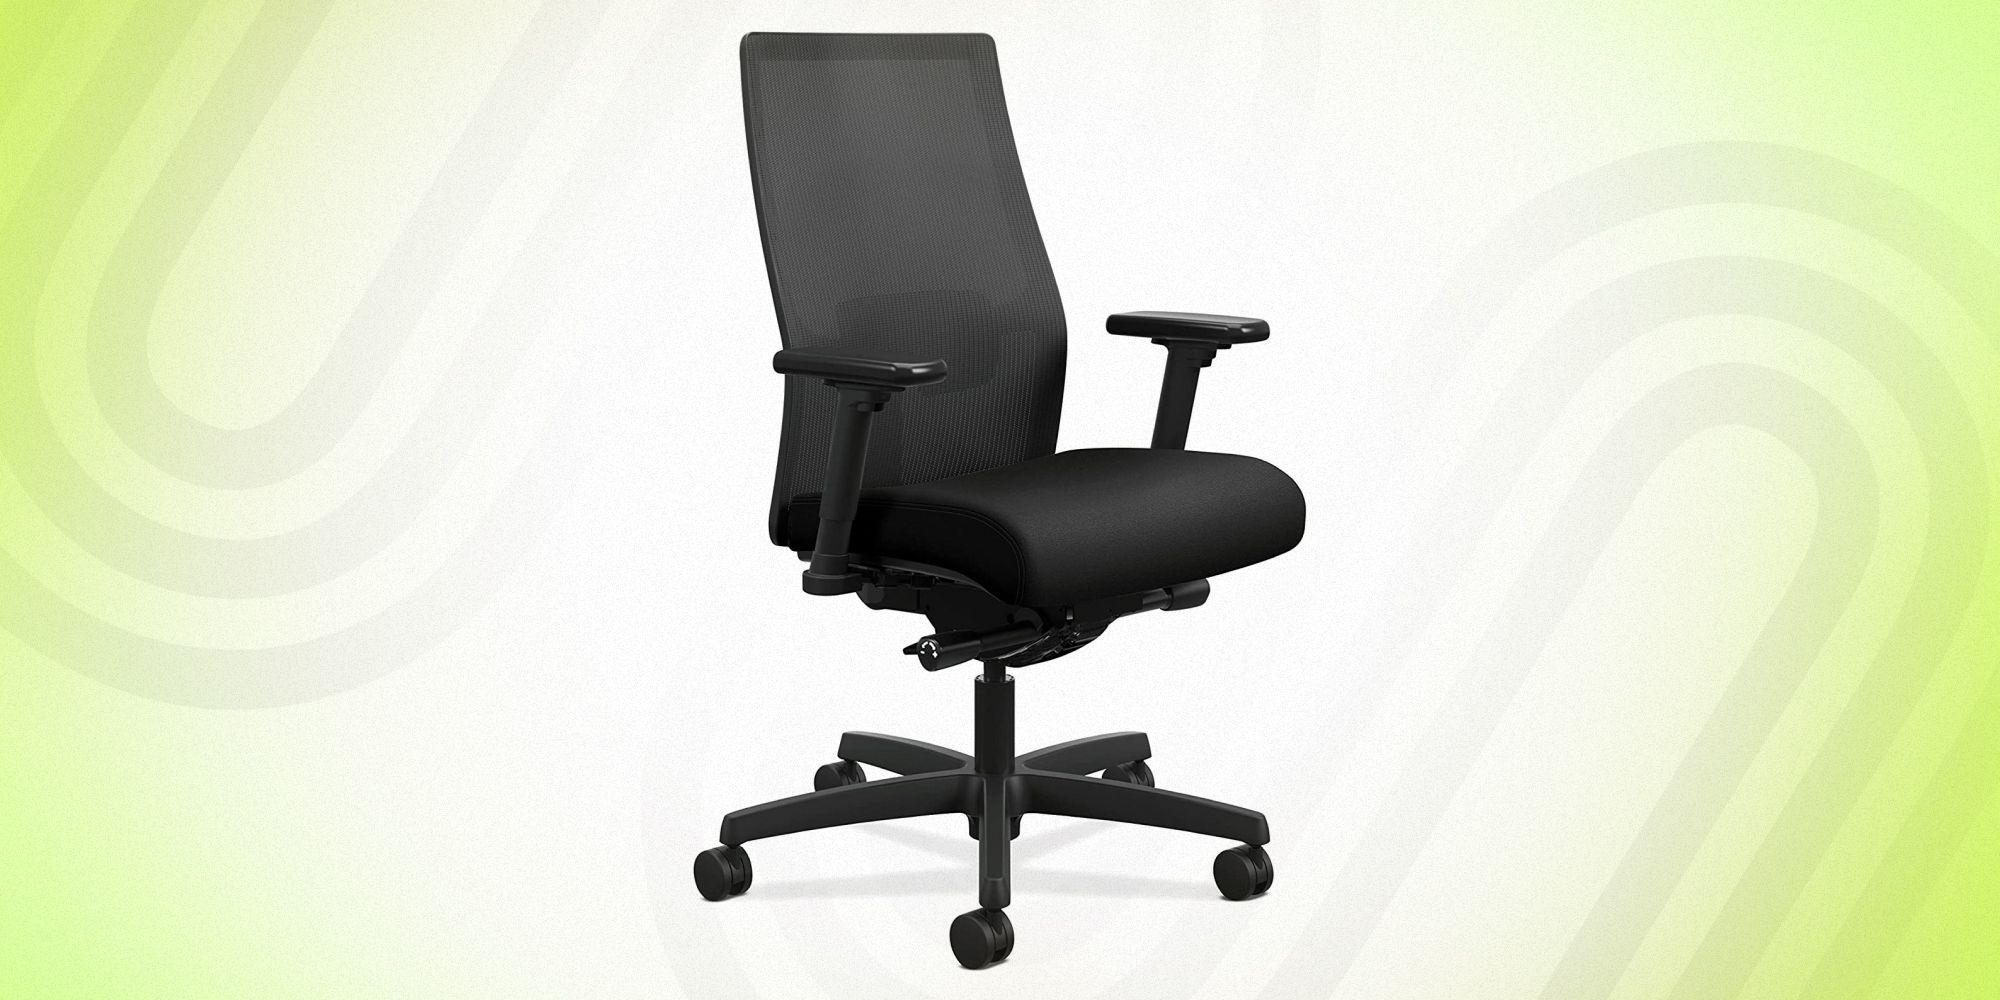 https://hips.hearstapps.com/hmg-prod/images/ergonomic-office-chair-1655388443.jpg